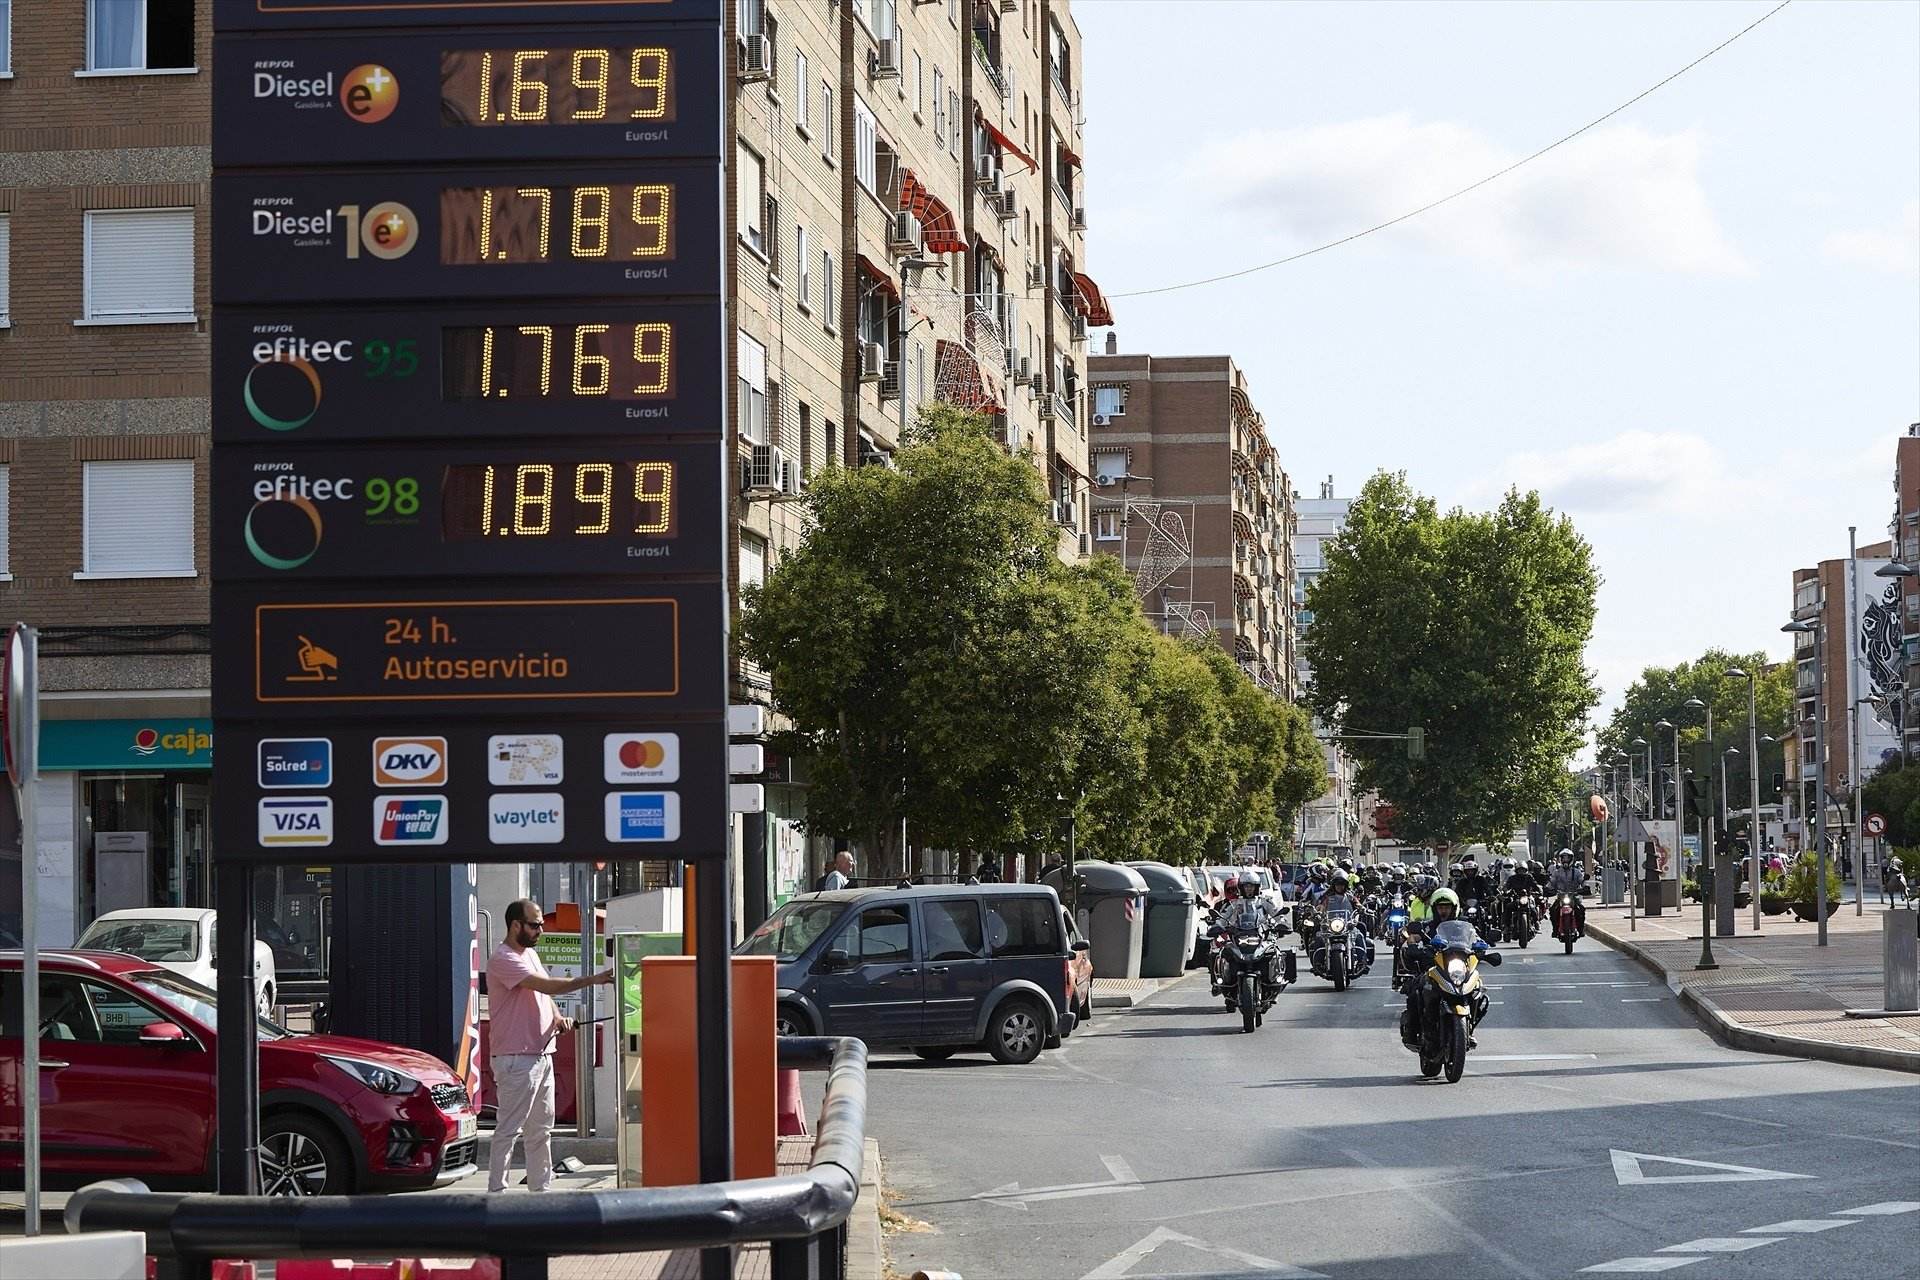 Bajada de precio inmediata de la gasolina y el diésel, depende de ti, paga menos